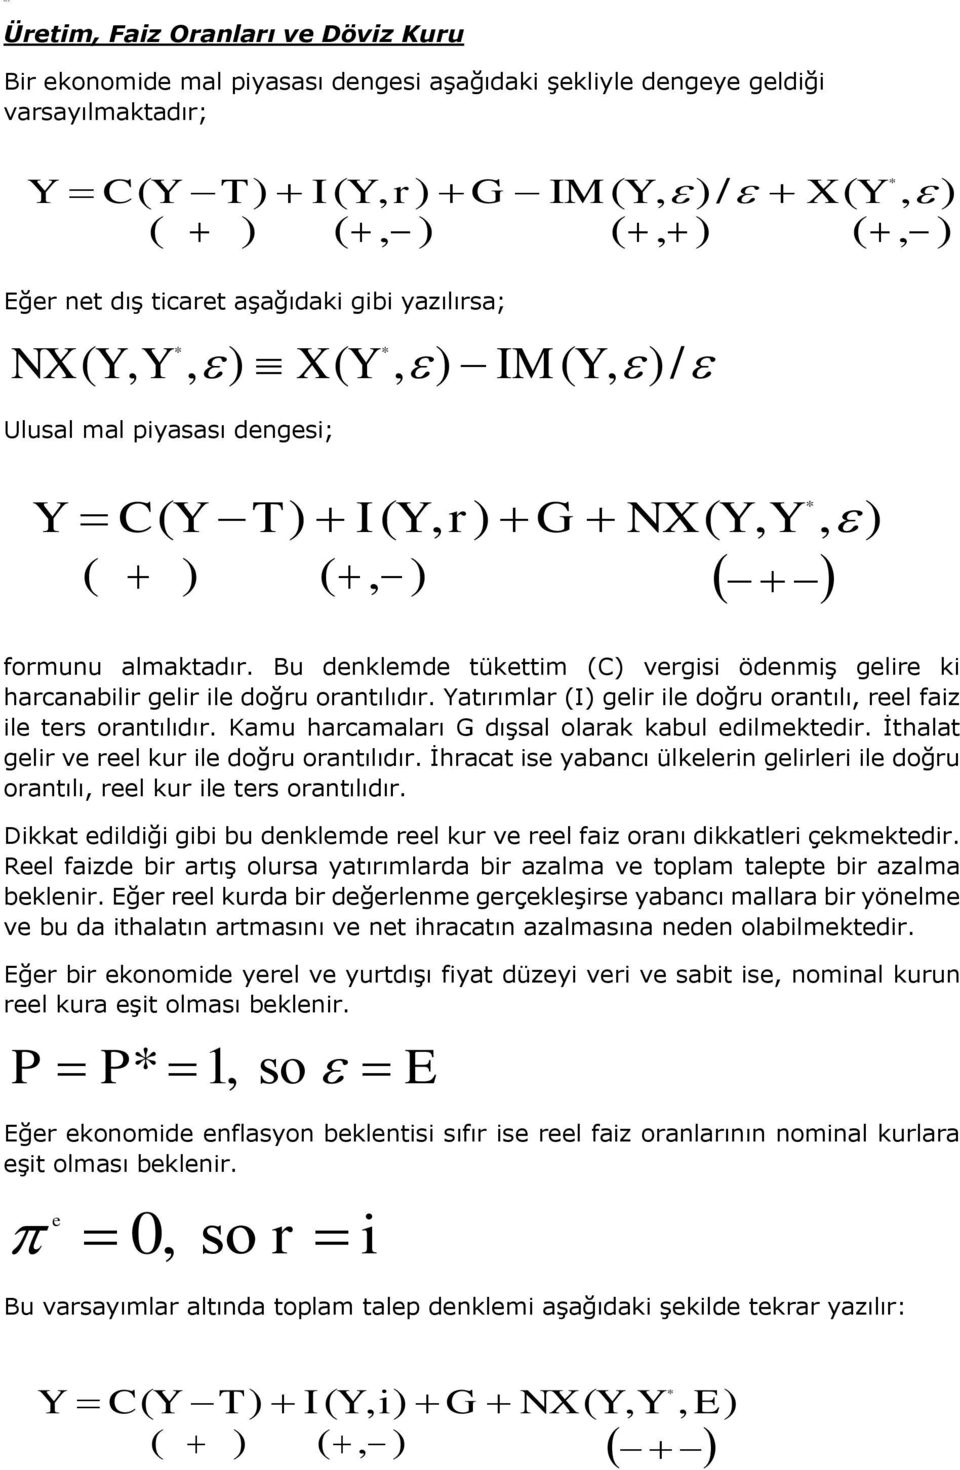 NX ( Y, Y, ) X ( Y, ) IM ( Y, )/ Ulusal mal pyasası dngs; Y C Y T I Y r G NX Y Y ( ) (, ) formunu almakadır. Bu dnklmd ükm (C) vrgs ödnmş glr k harcanablr glr l doğru oranılıdır.